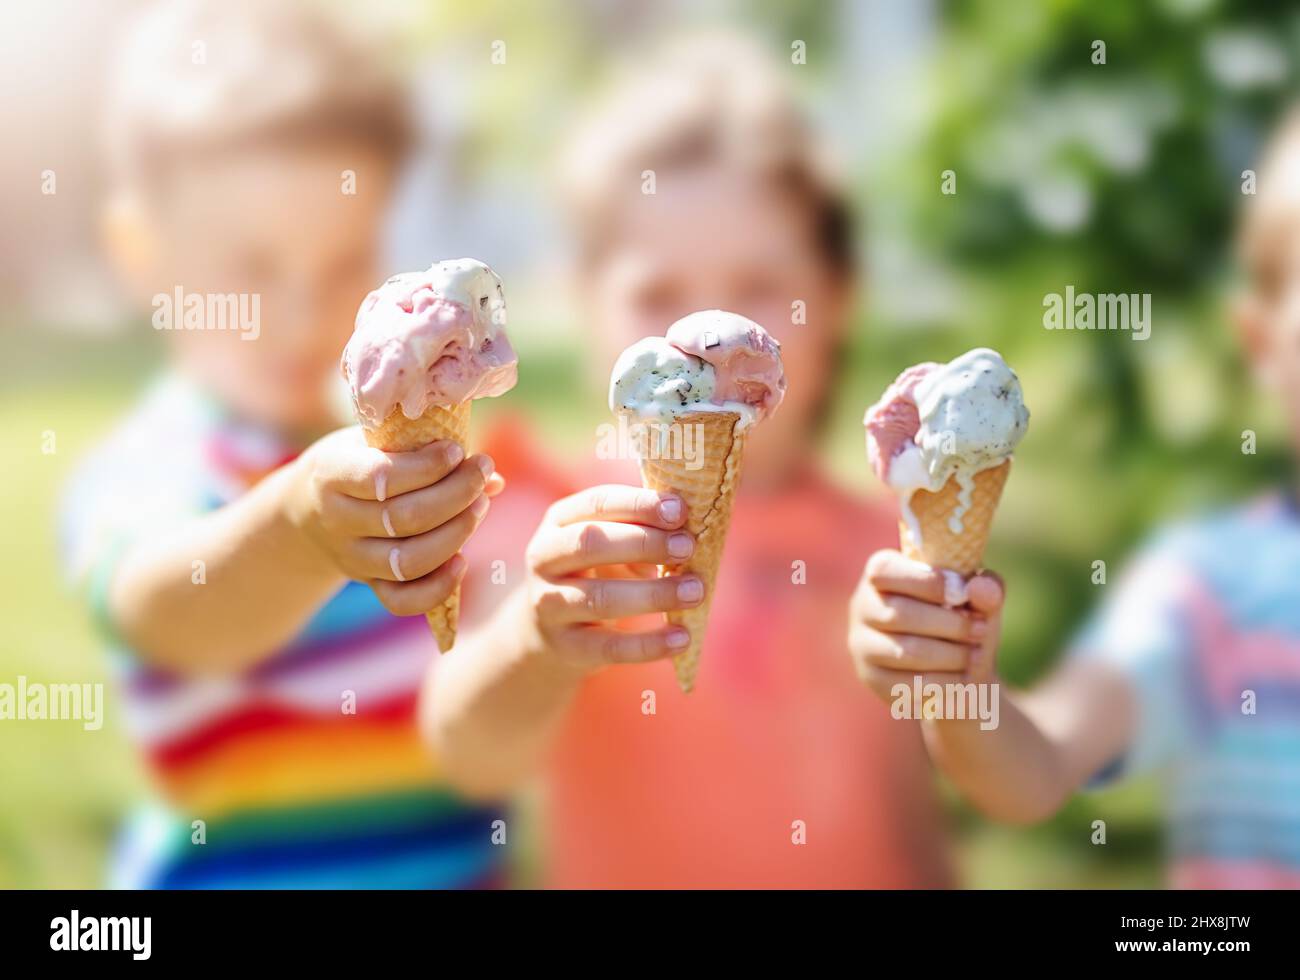 Groupe d'enfants du parc qui mangent de la crème glacée froide. Banque D'Images